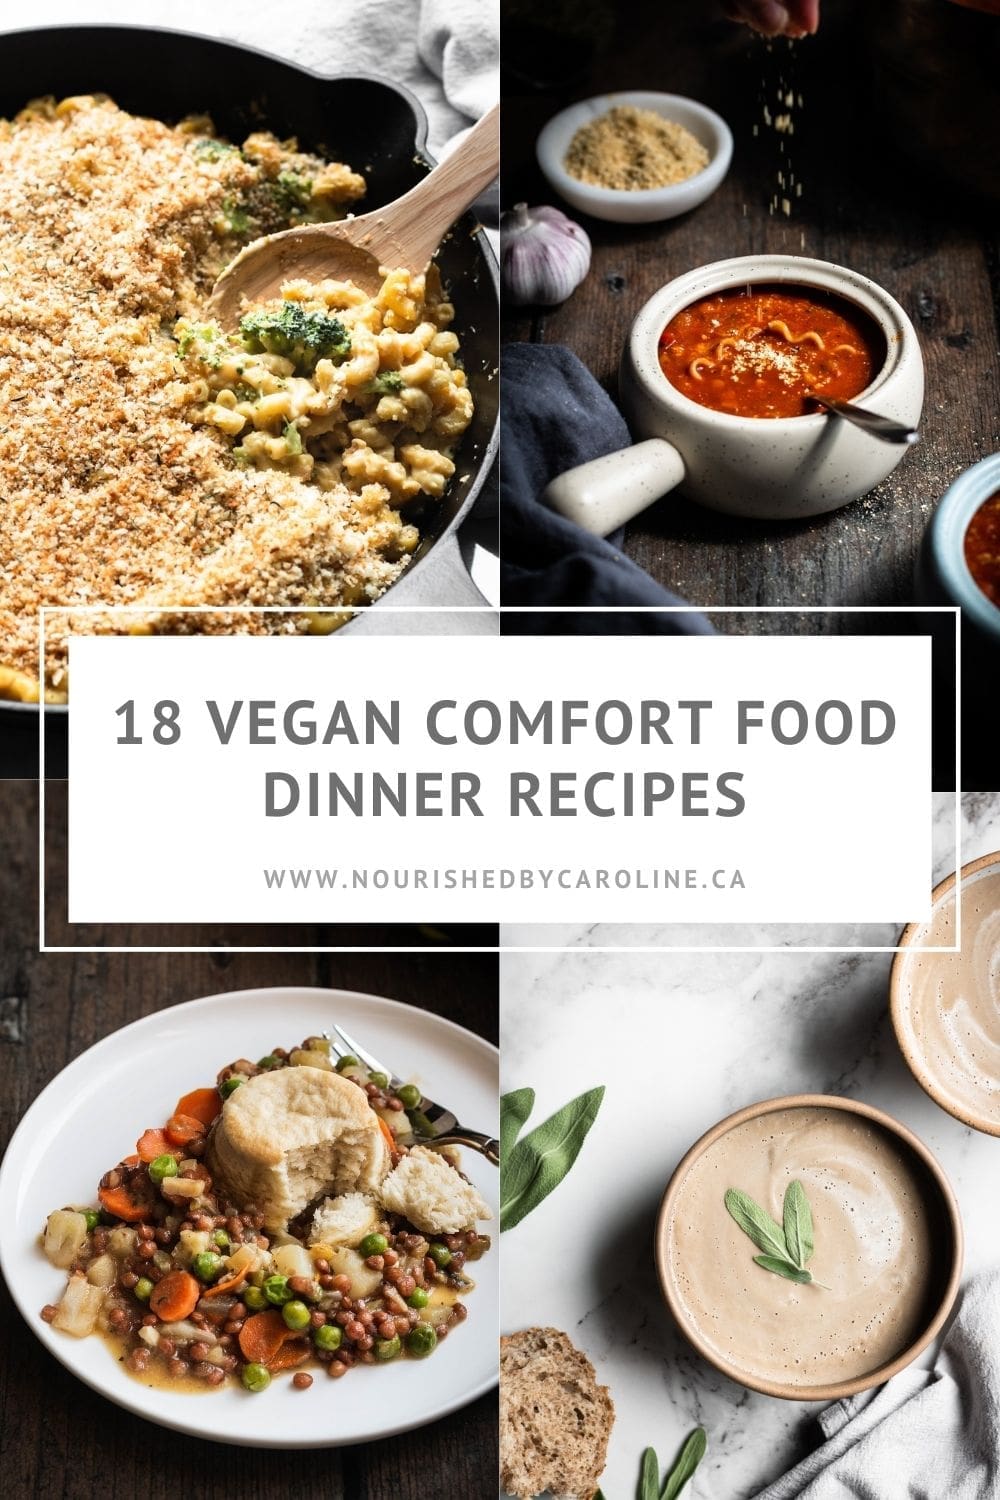 18 Vegan Comfort Food Dinner Recipes - Nourished by Caroline